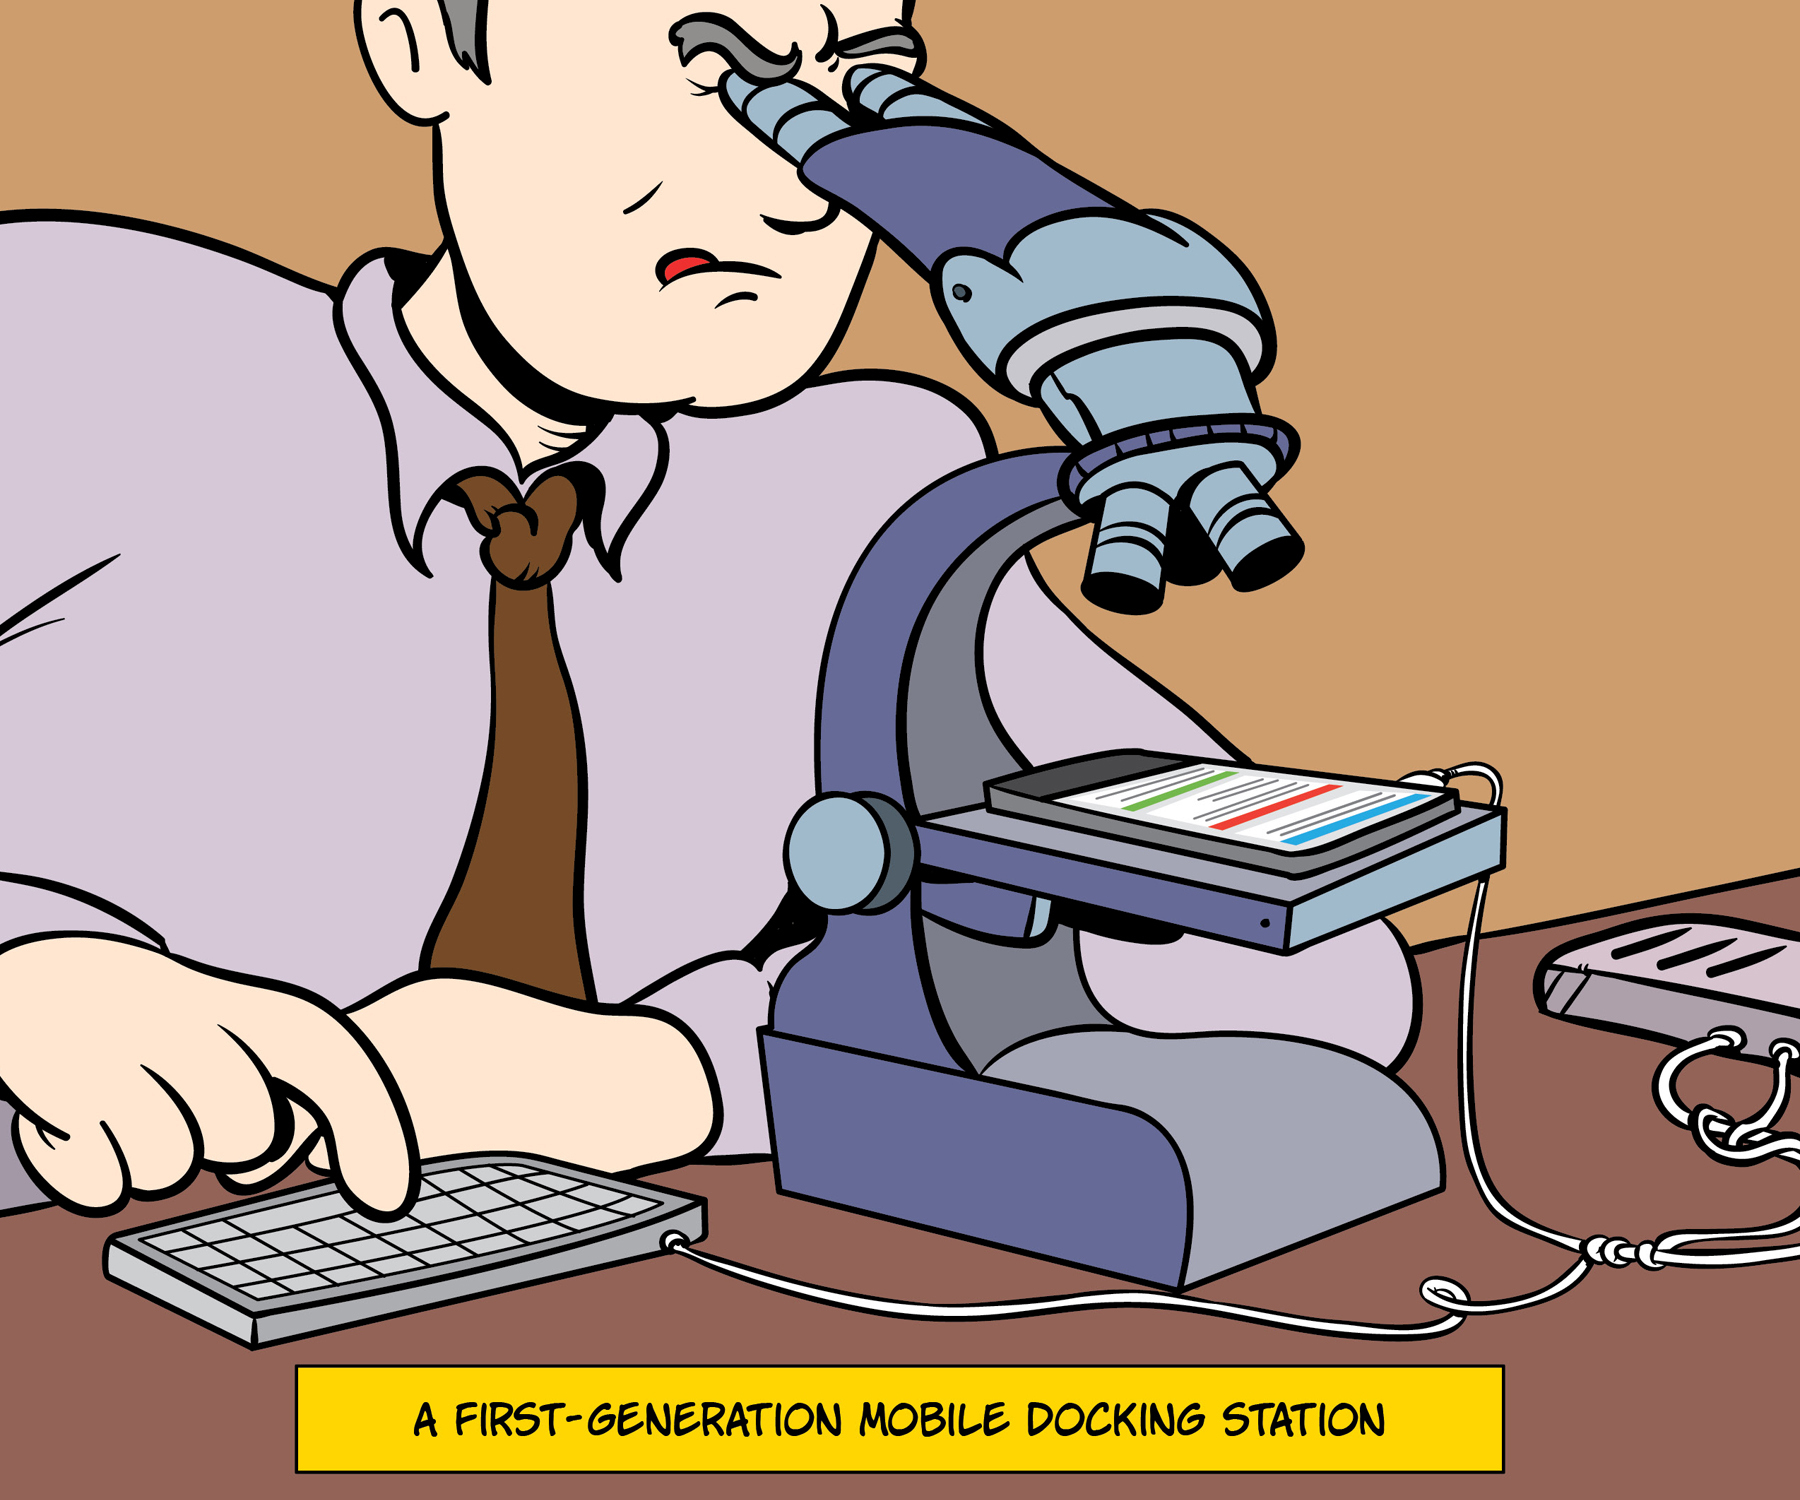 komiks zobrazující mobilní dokovací stanici první generace